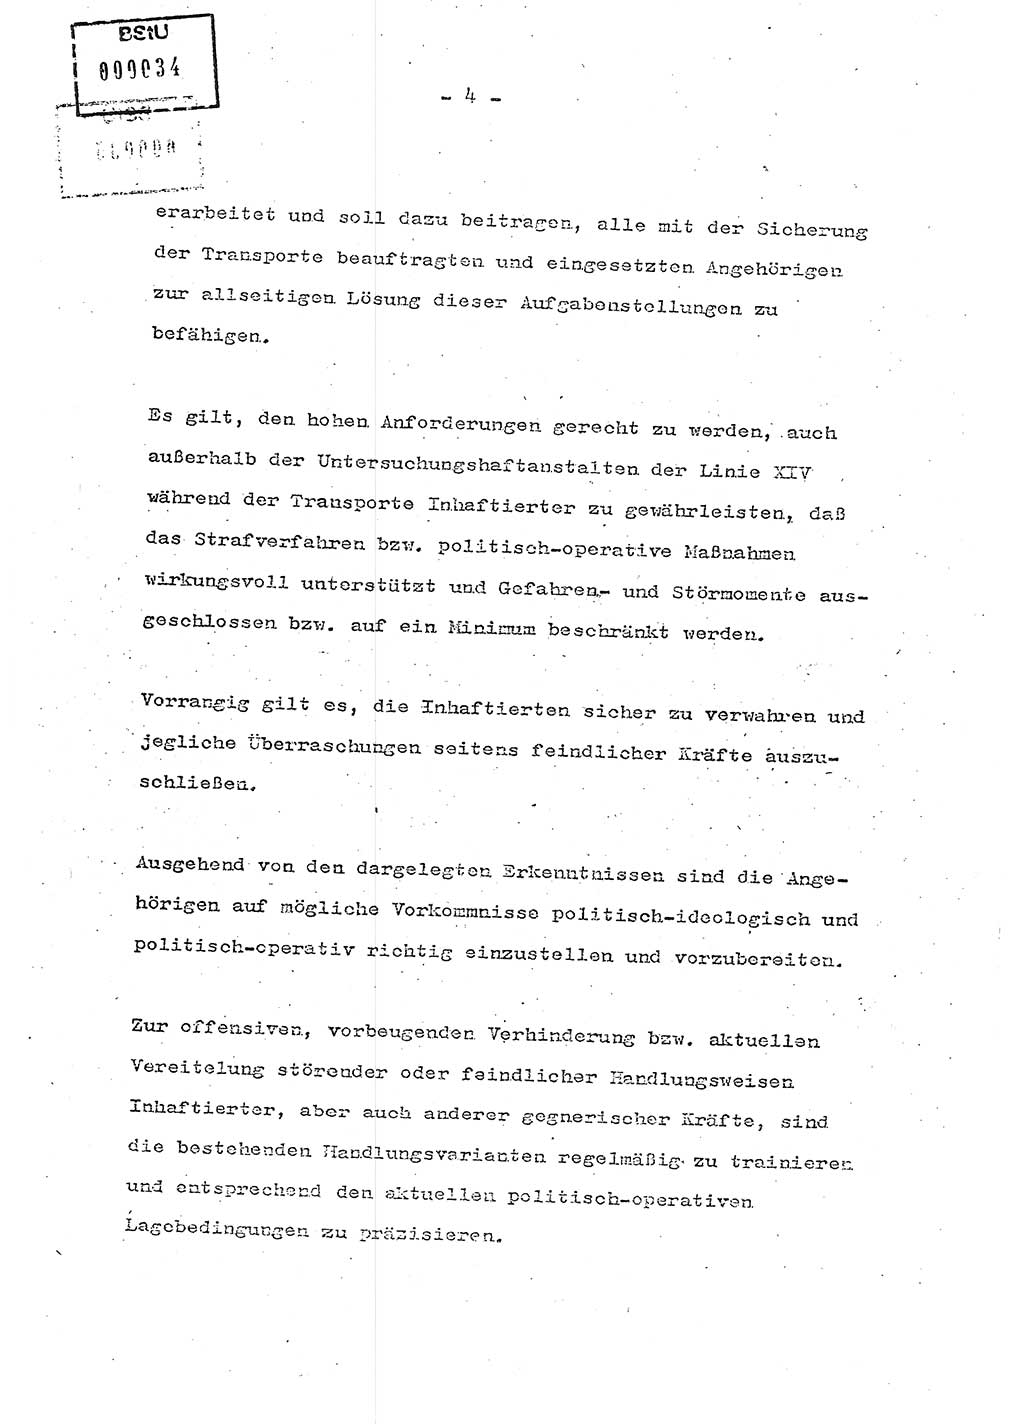 Schulungsmaterial Exemplar-Nr.: 7, Ministerium für Staatssicherheit [Deutsche Demokratische Republik (DDR)], Abteilung (Abt.) ⅩⅣ, Berlin 1986, Seite 4 (Sch.-Mat. Expl. 7 MfS DDR Abt. ⅩⅣ /86 1986, S. 4)